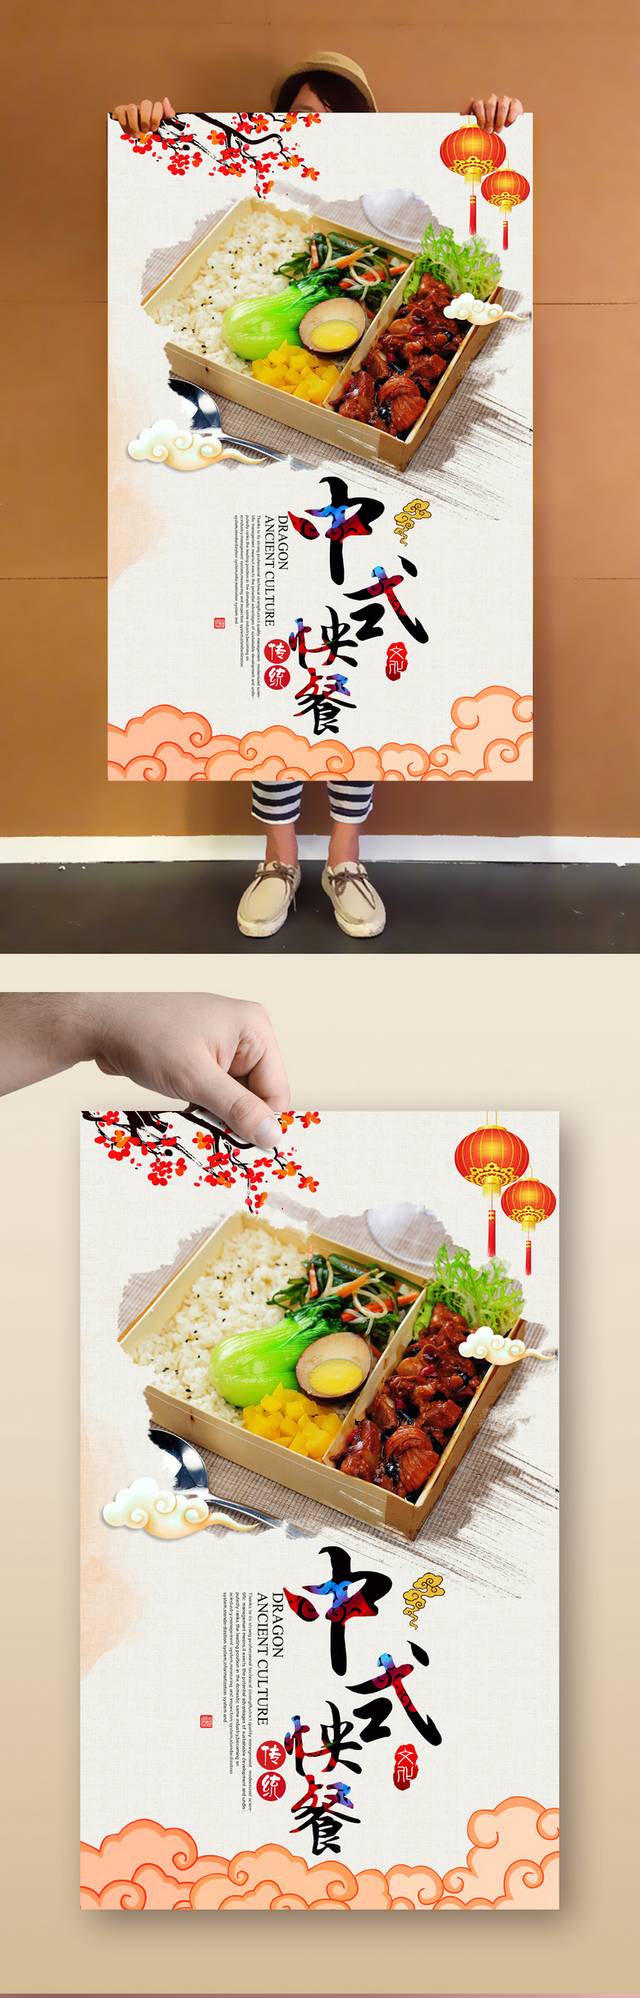 中国风快餐宣传海报设计